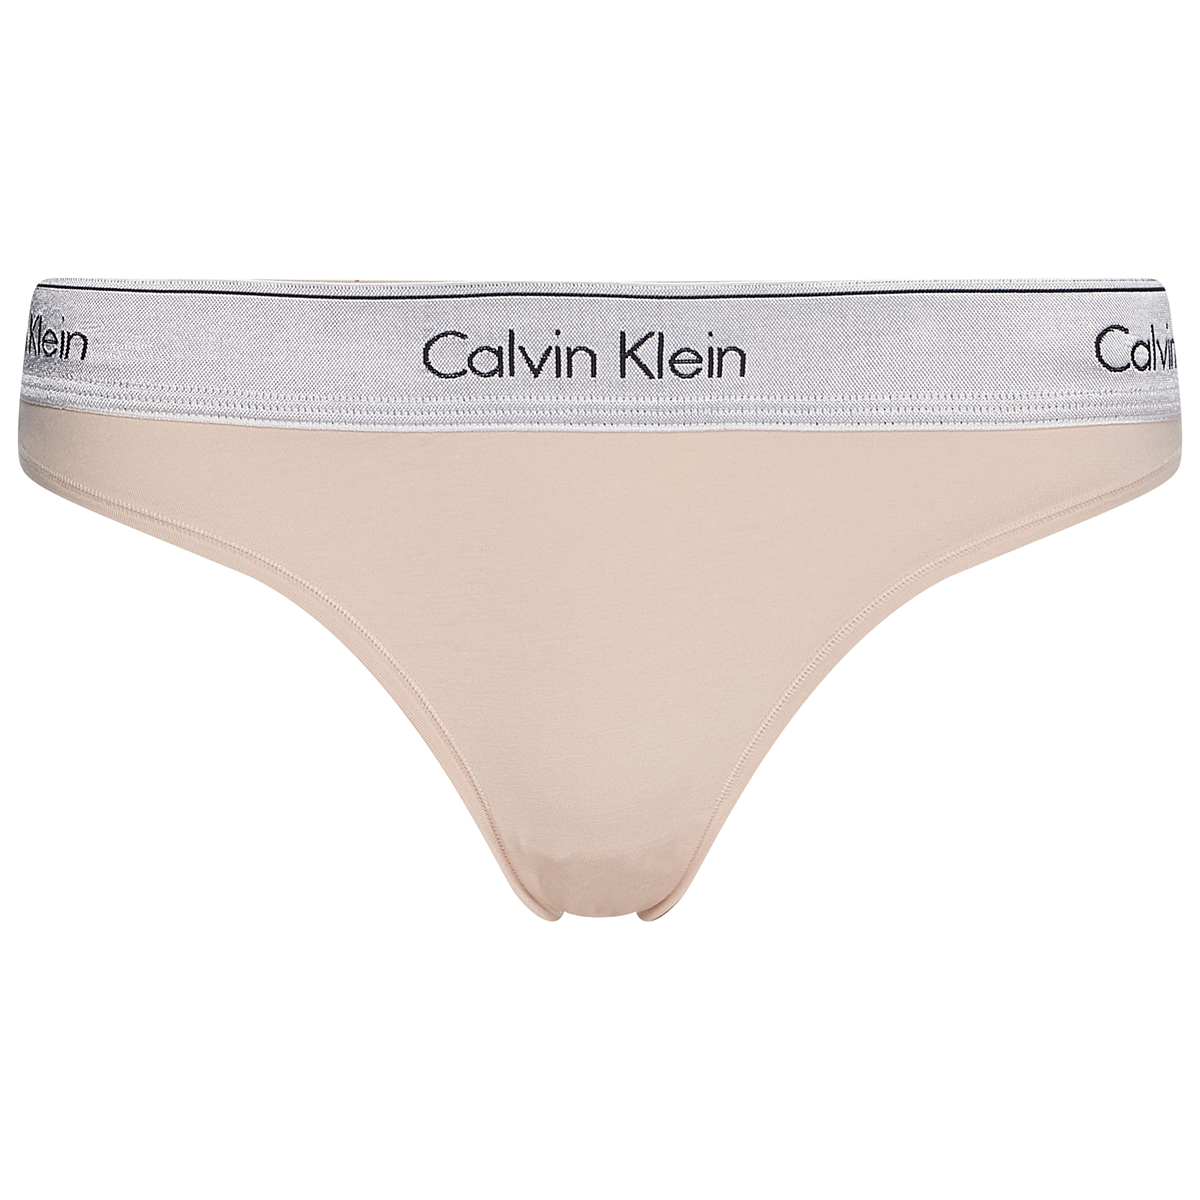 Billede af Calvin Klein Tai Trusse, Farve: Buff Beige Sølv, Størrelse: M, Dame